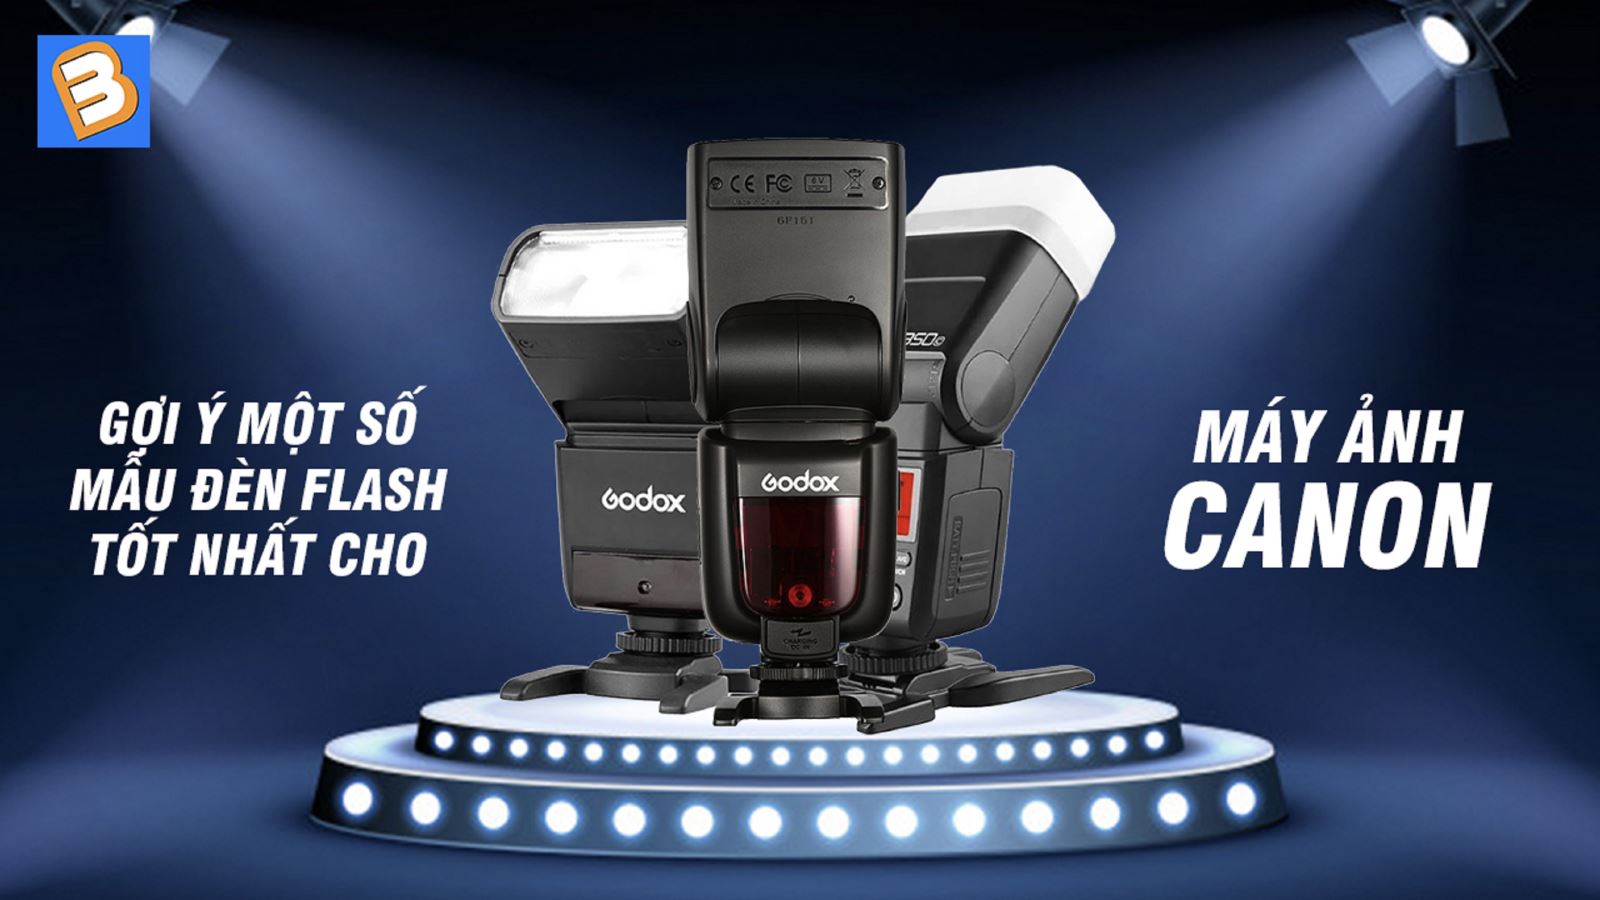 Gợi ý một số mẫu đèn flash tốt nhất cho máy ảnh Canon